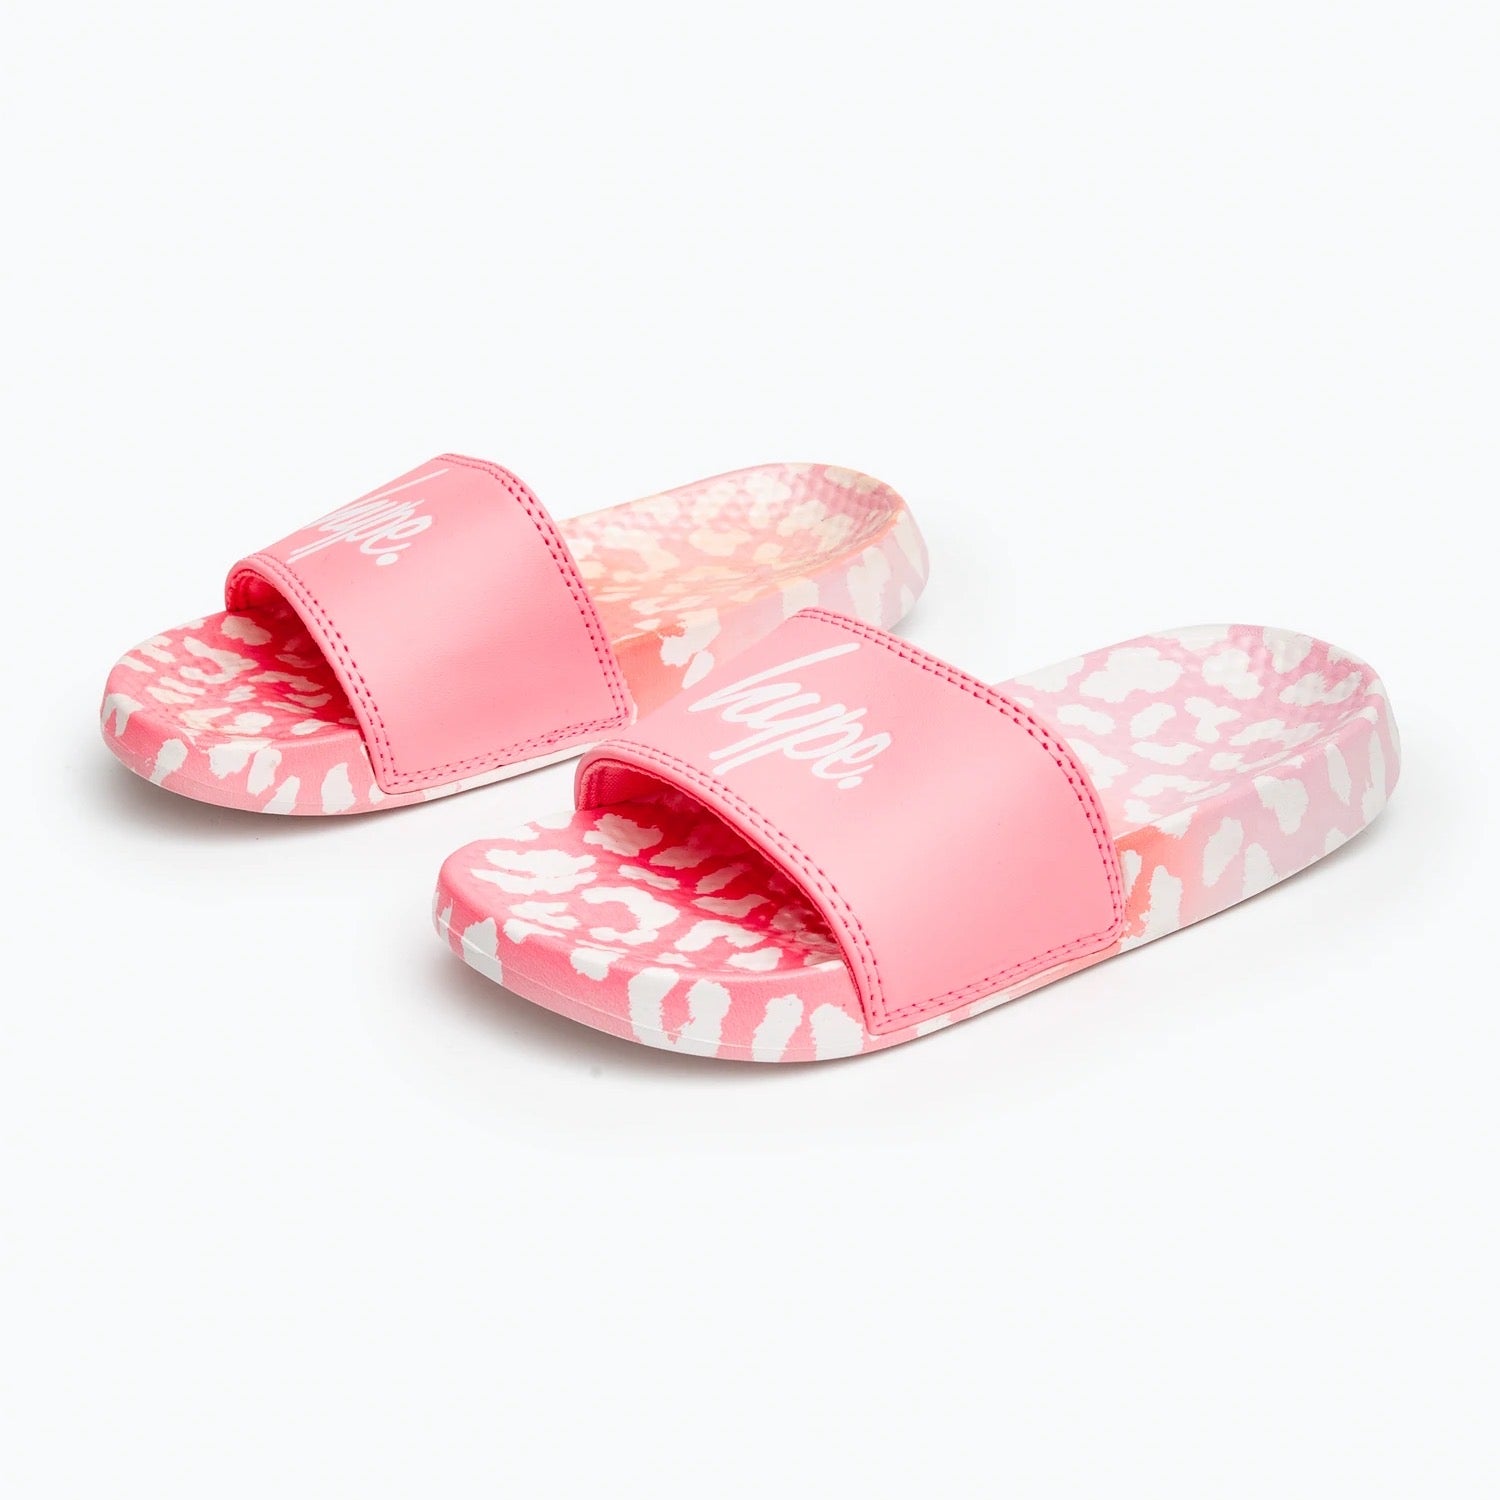 Hype Pink Leopard Sliders Zvlr-714 Footwear UK12 KIDS / Pink,UK13 KIDS / Pink,UK1 KIDS / Pink,UK2 KIDS / Pink,UK3 KIDS / Pink,UK4 ADULT / Pink,UK5 ADULT / Pink